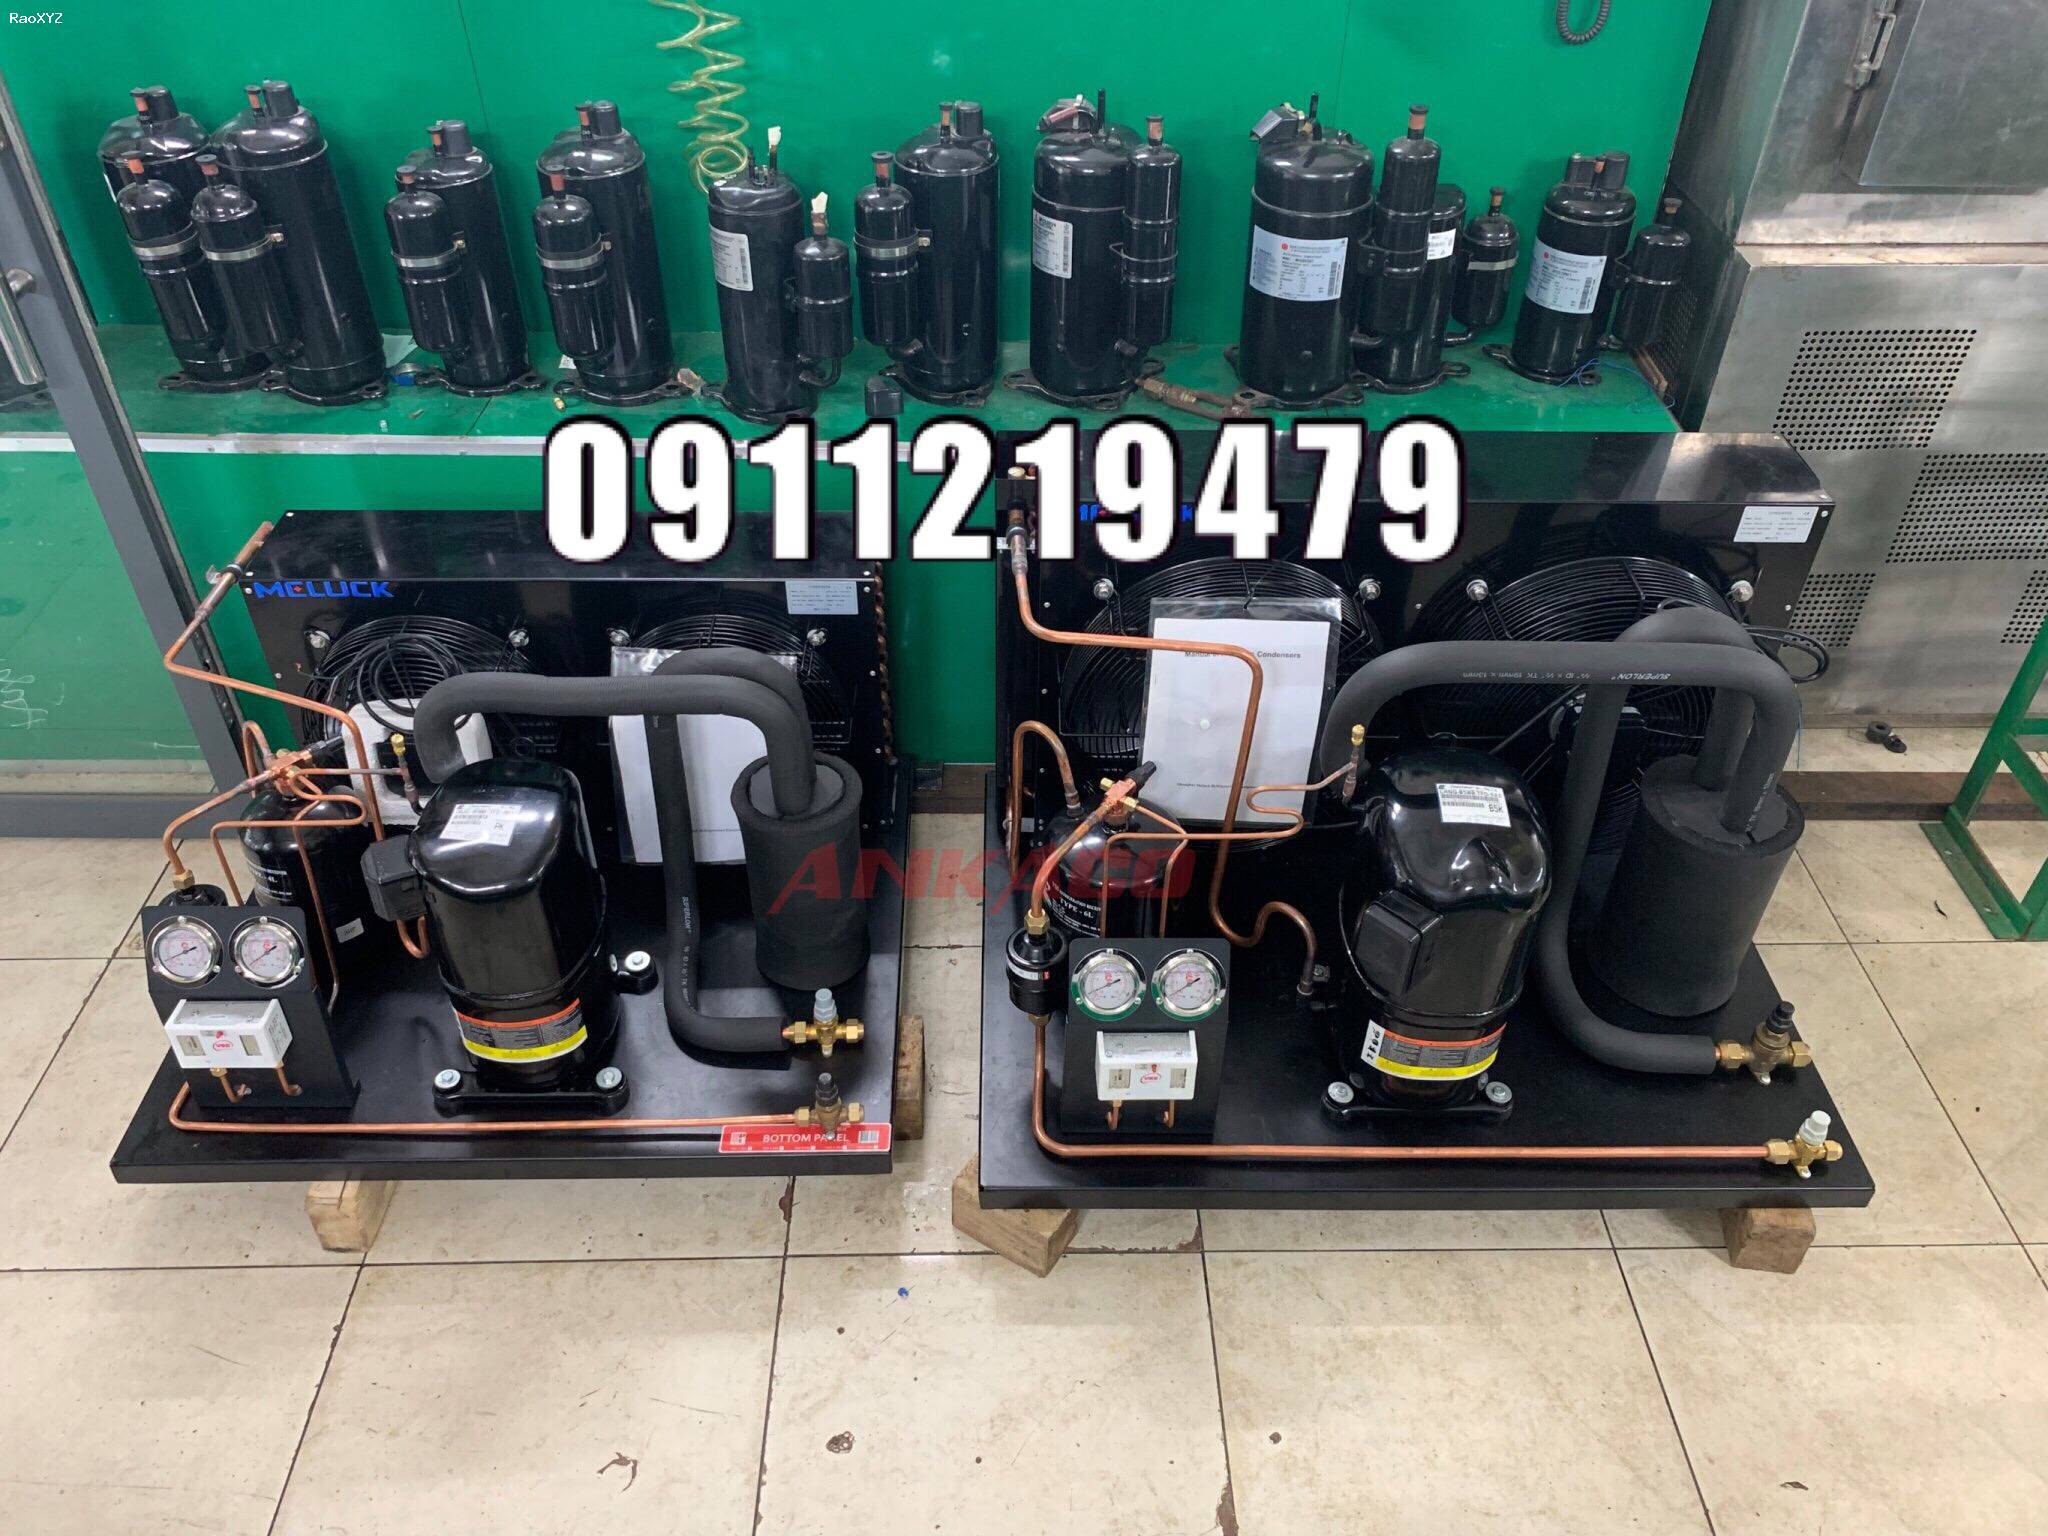 ANKACO 0947,459,479 kiểm tra thay (lắp) cụm máy nén kho lạnh Copeland Piston 5 hp CRNQ-0500-TFD tại TP HCM